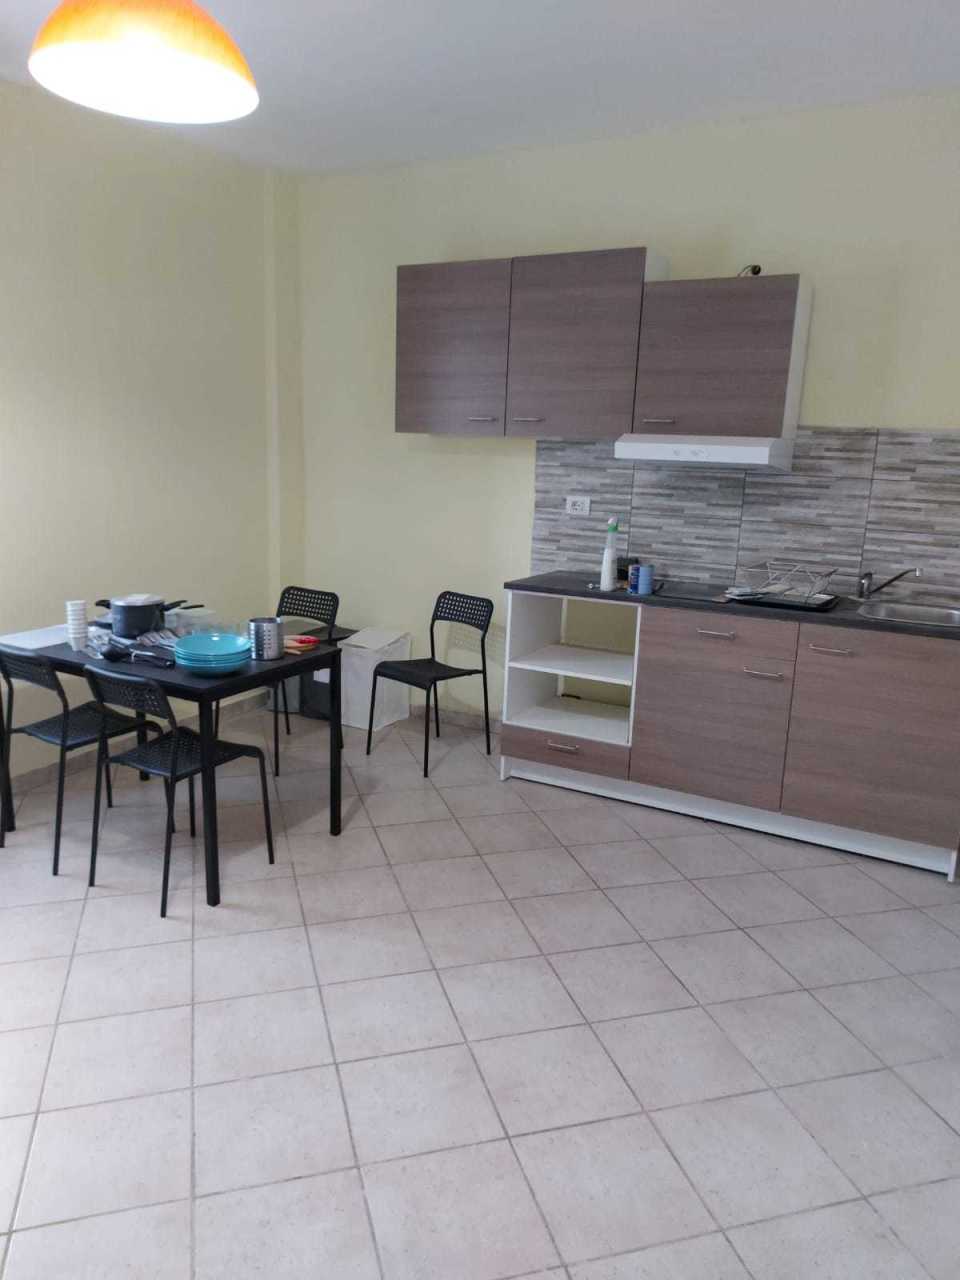 Appartamento in vendita a Medesano, 2 locali, prezzo € 45.000 | PortaleAgenzieImmobiliari.it